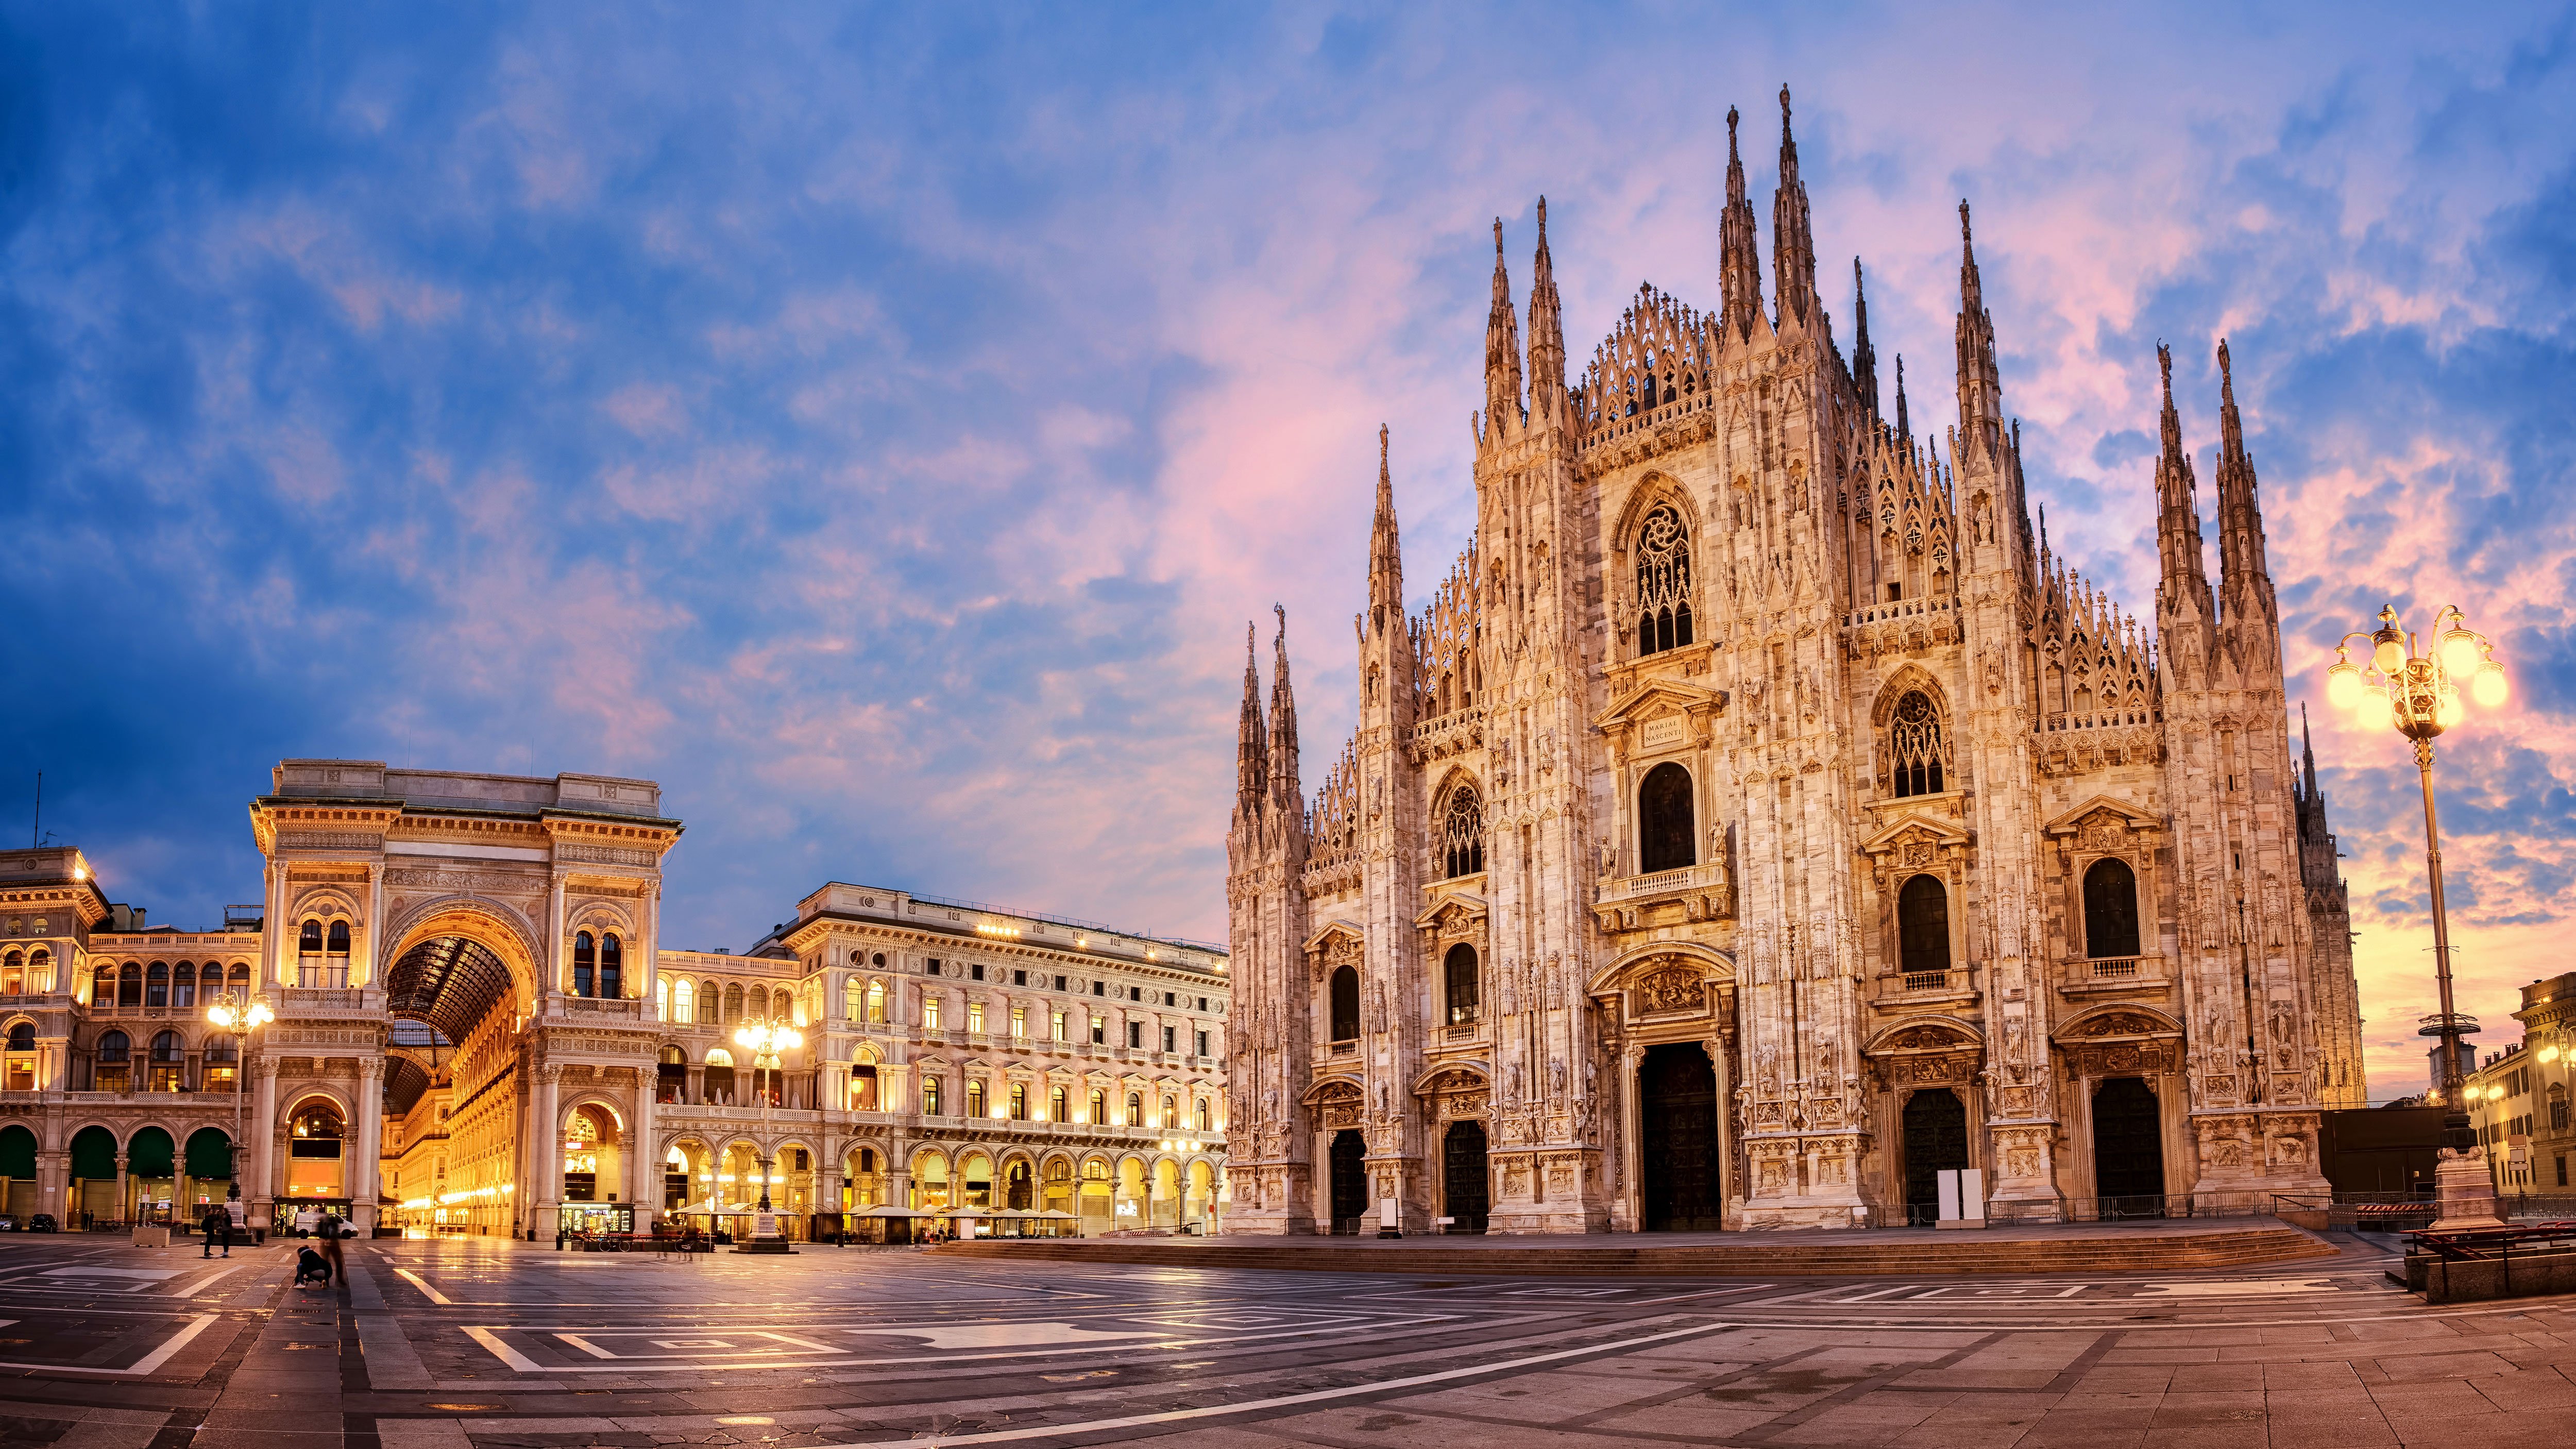 Milan city center with a church Duomo di Milano